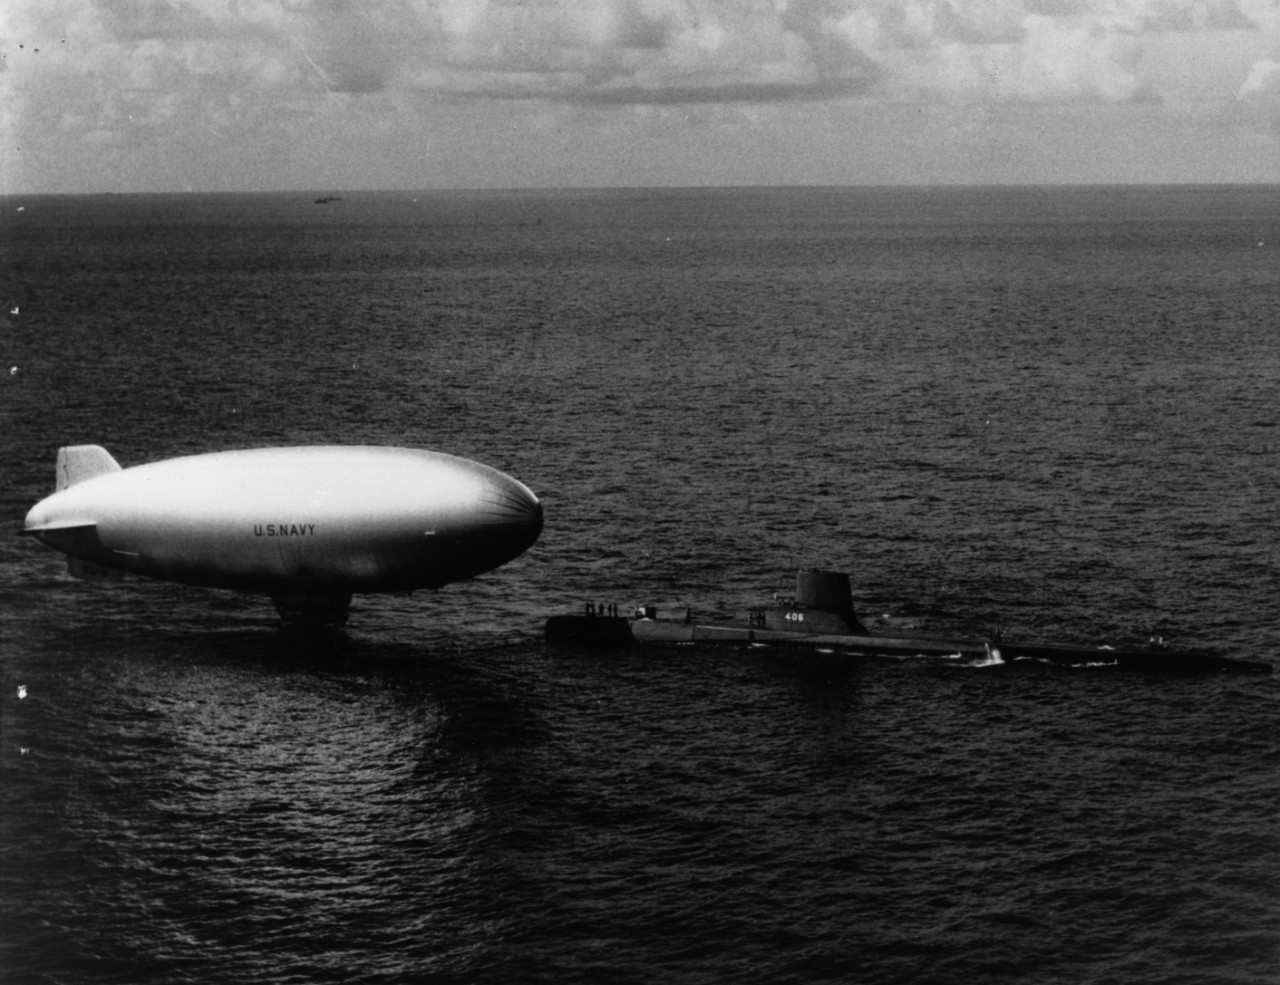 K-class blimp ZP2K-86 being taken under tow by submarine USS Sea Poacher (SS-406), circa 1952-1953